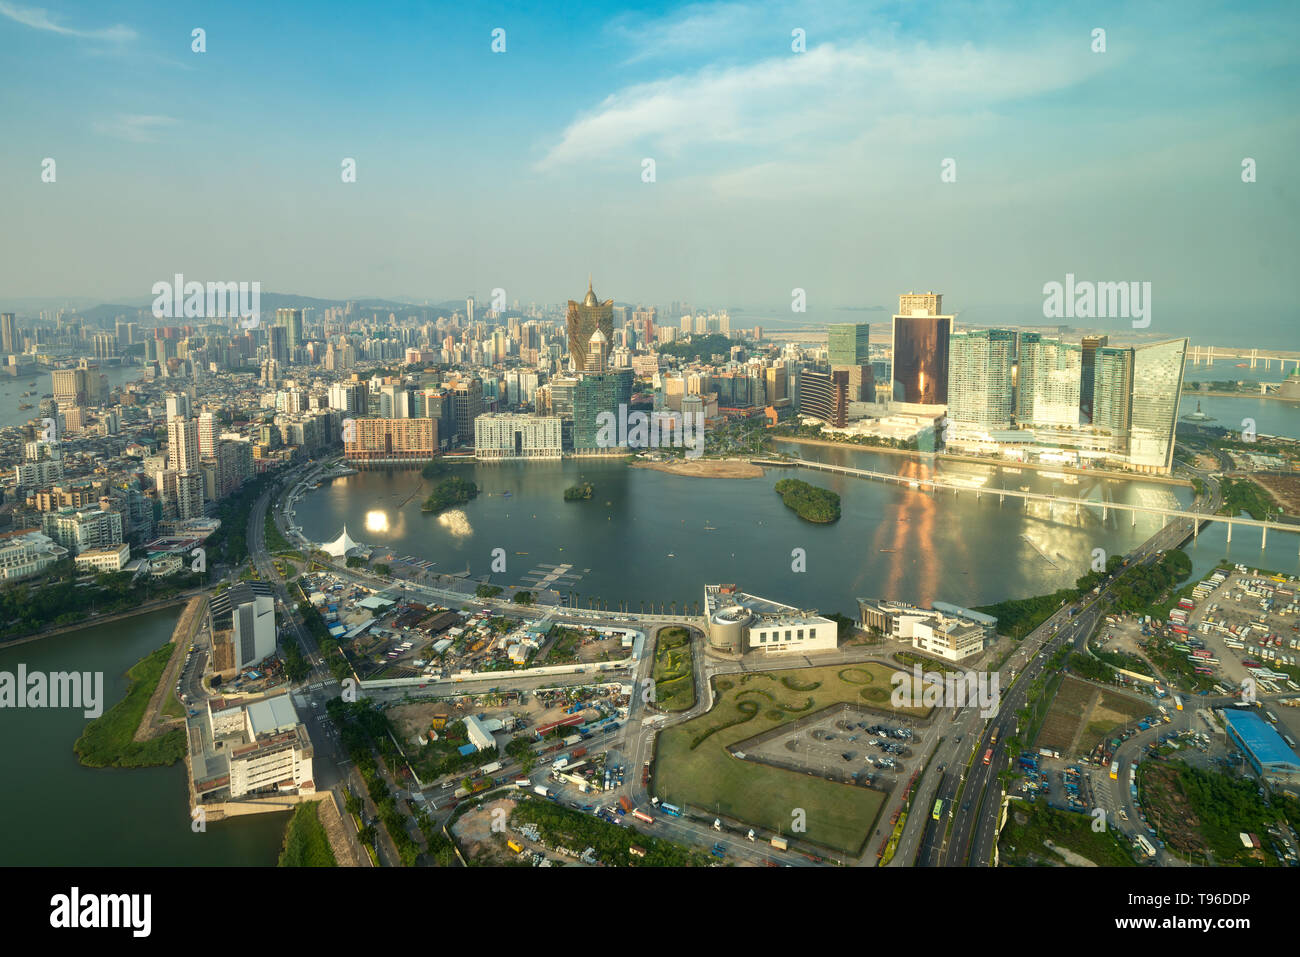 Image de Macao (Macao), Chine. Hôtel gratte-ciel et des capacités au centre-ville de casino à Macao (Macao). Banque D'Images